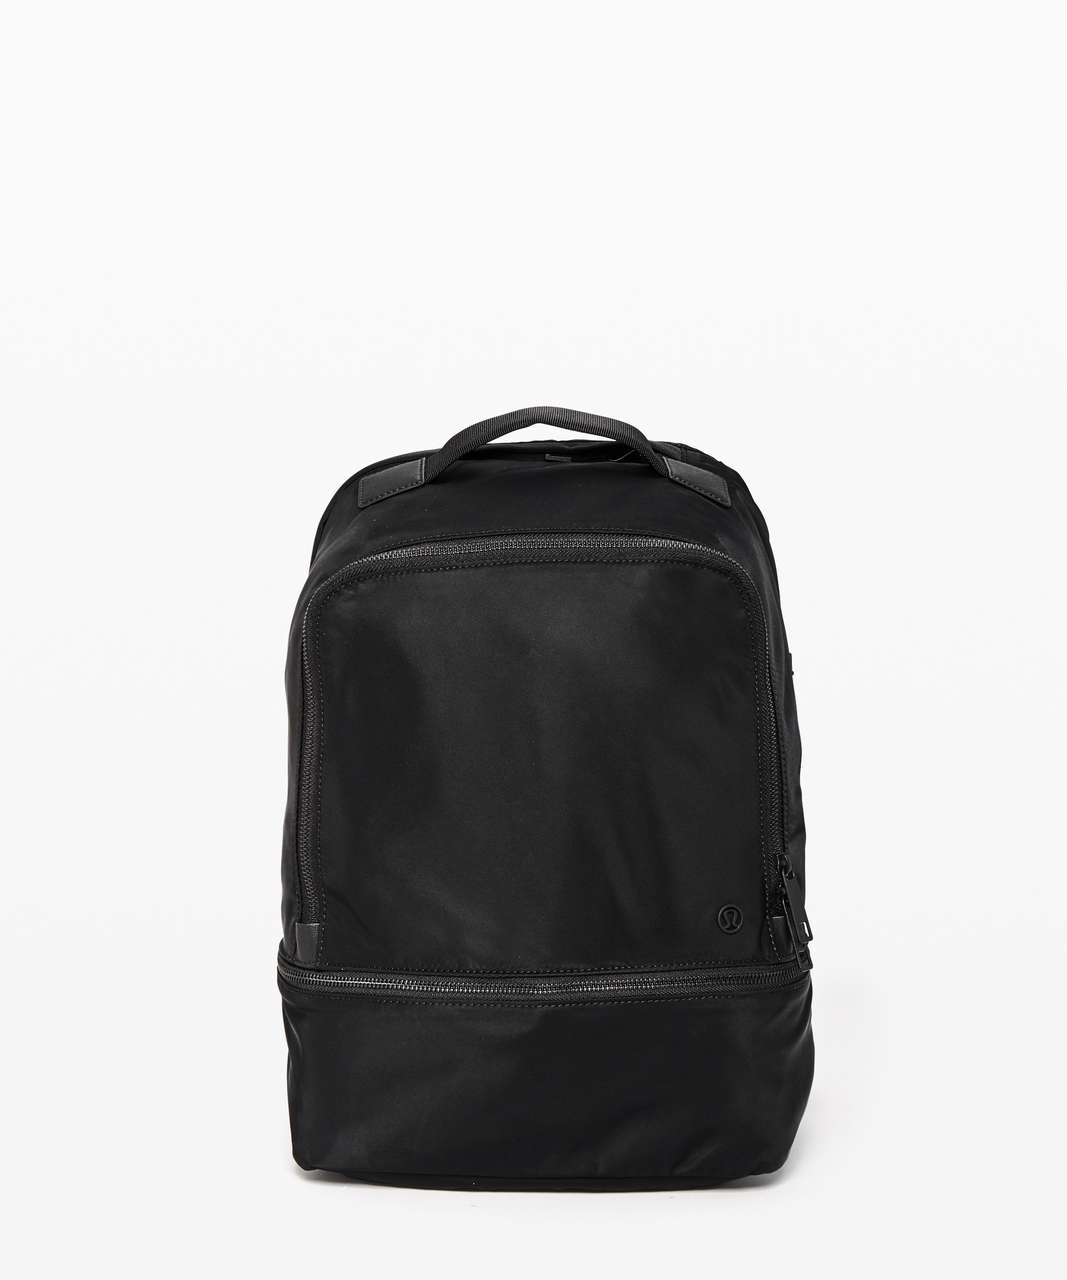 Lululemon City Adventurer Backpack *17L - Black (Third Release)